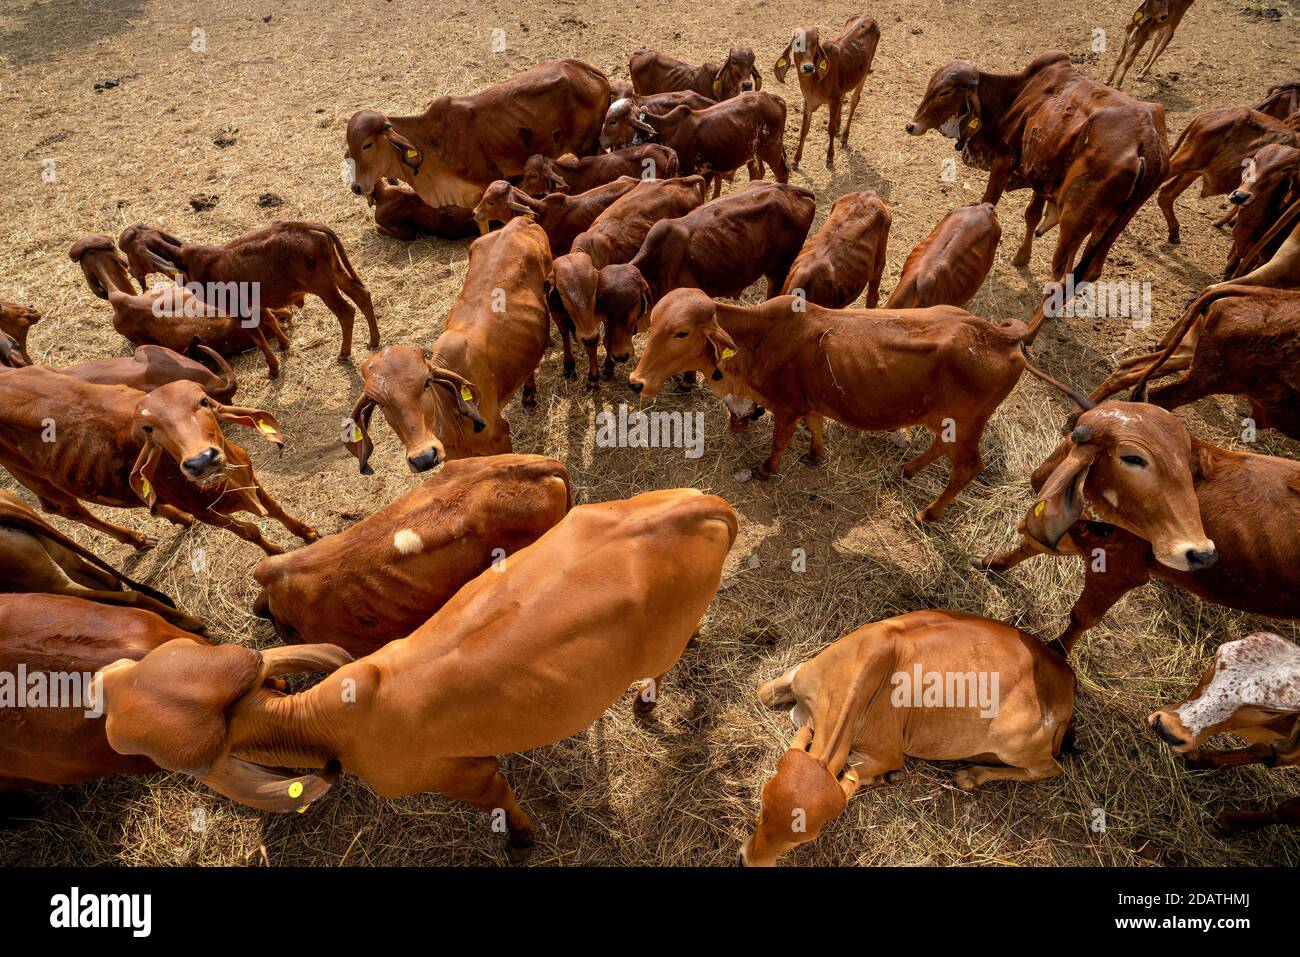 Nashik, 17, décembre 2019 : Groupe de vaches indiennes brunes qui se reposent à l'extérieur dans une zone abritée ouverte de la ferme laitière moderne, Nashik, Maharashtra, Inde Banque D'Images